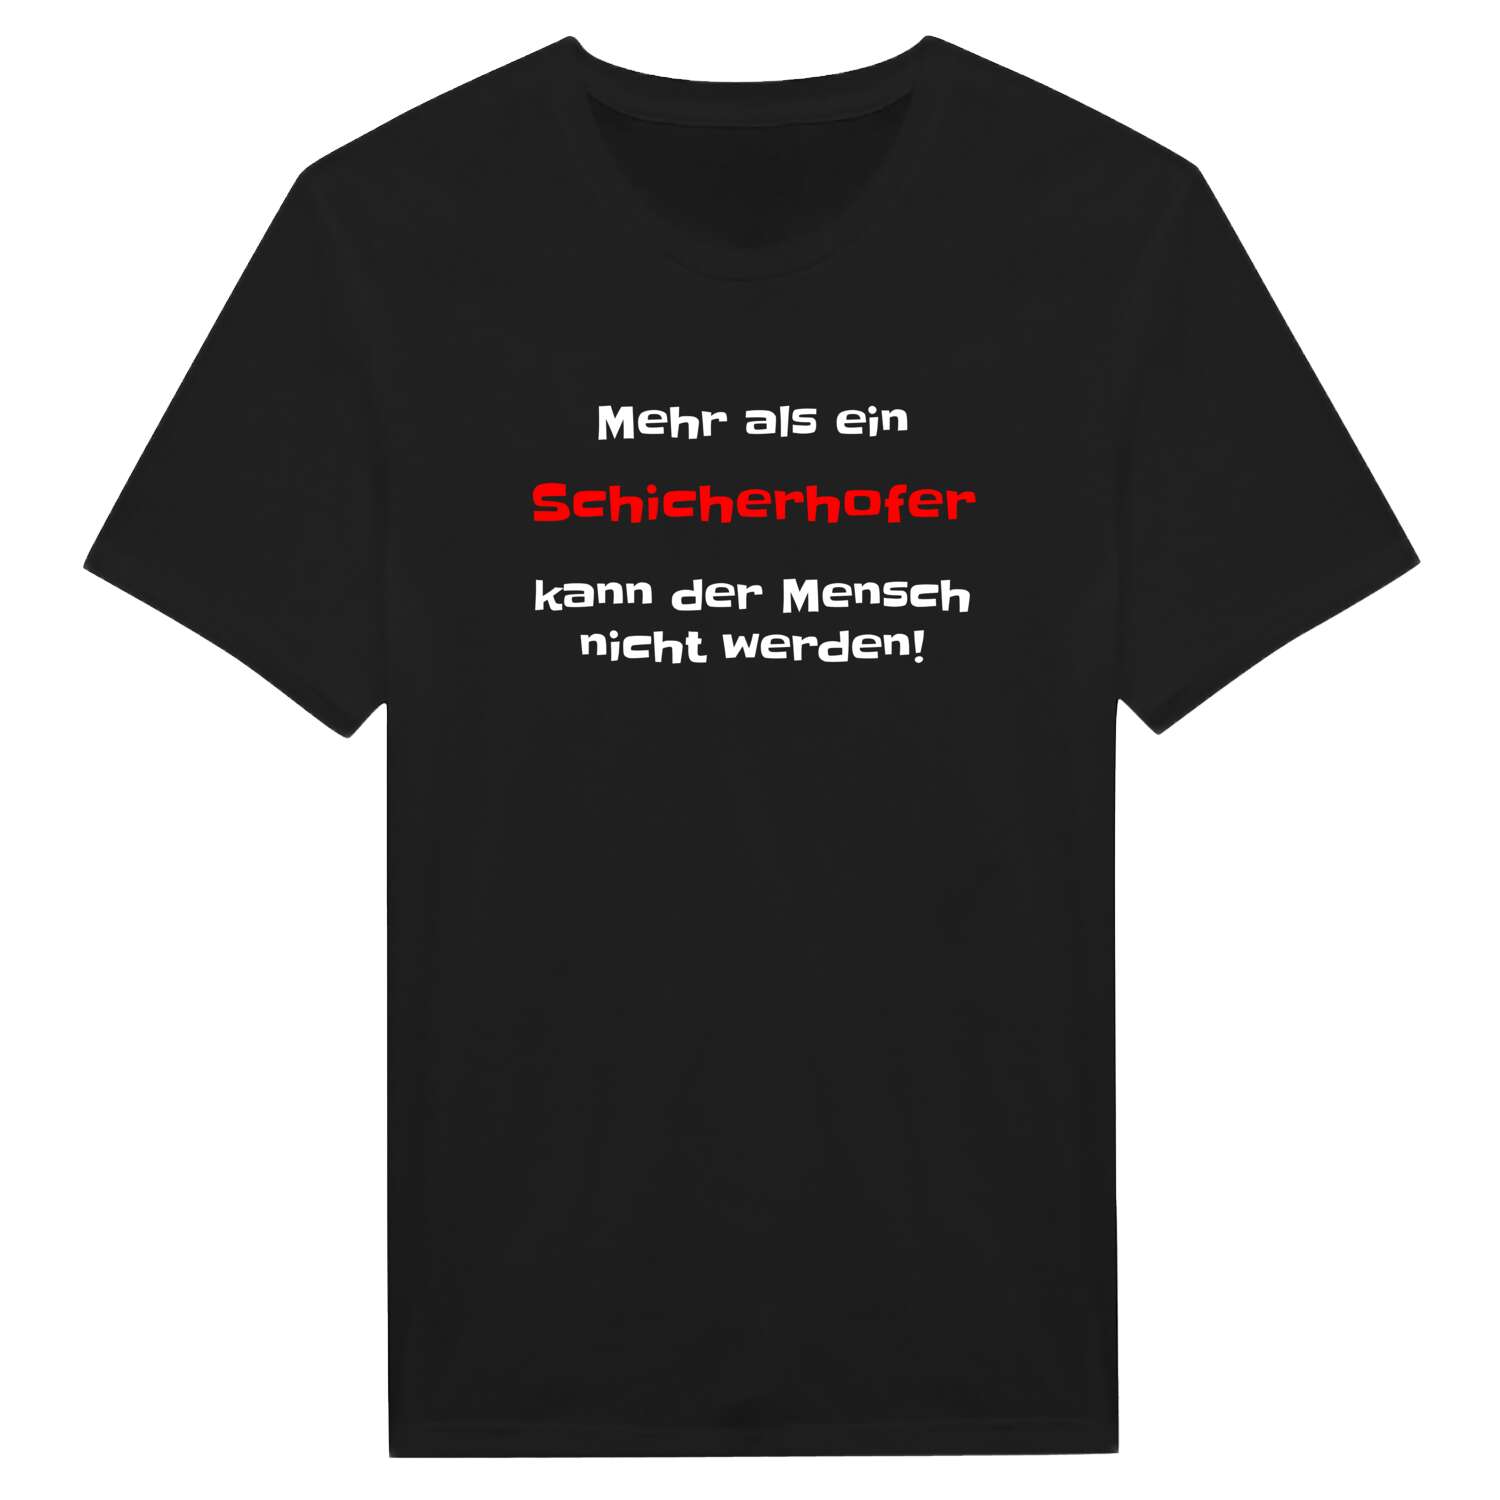 Schicherhof T-Shirt »Mehr als ein«